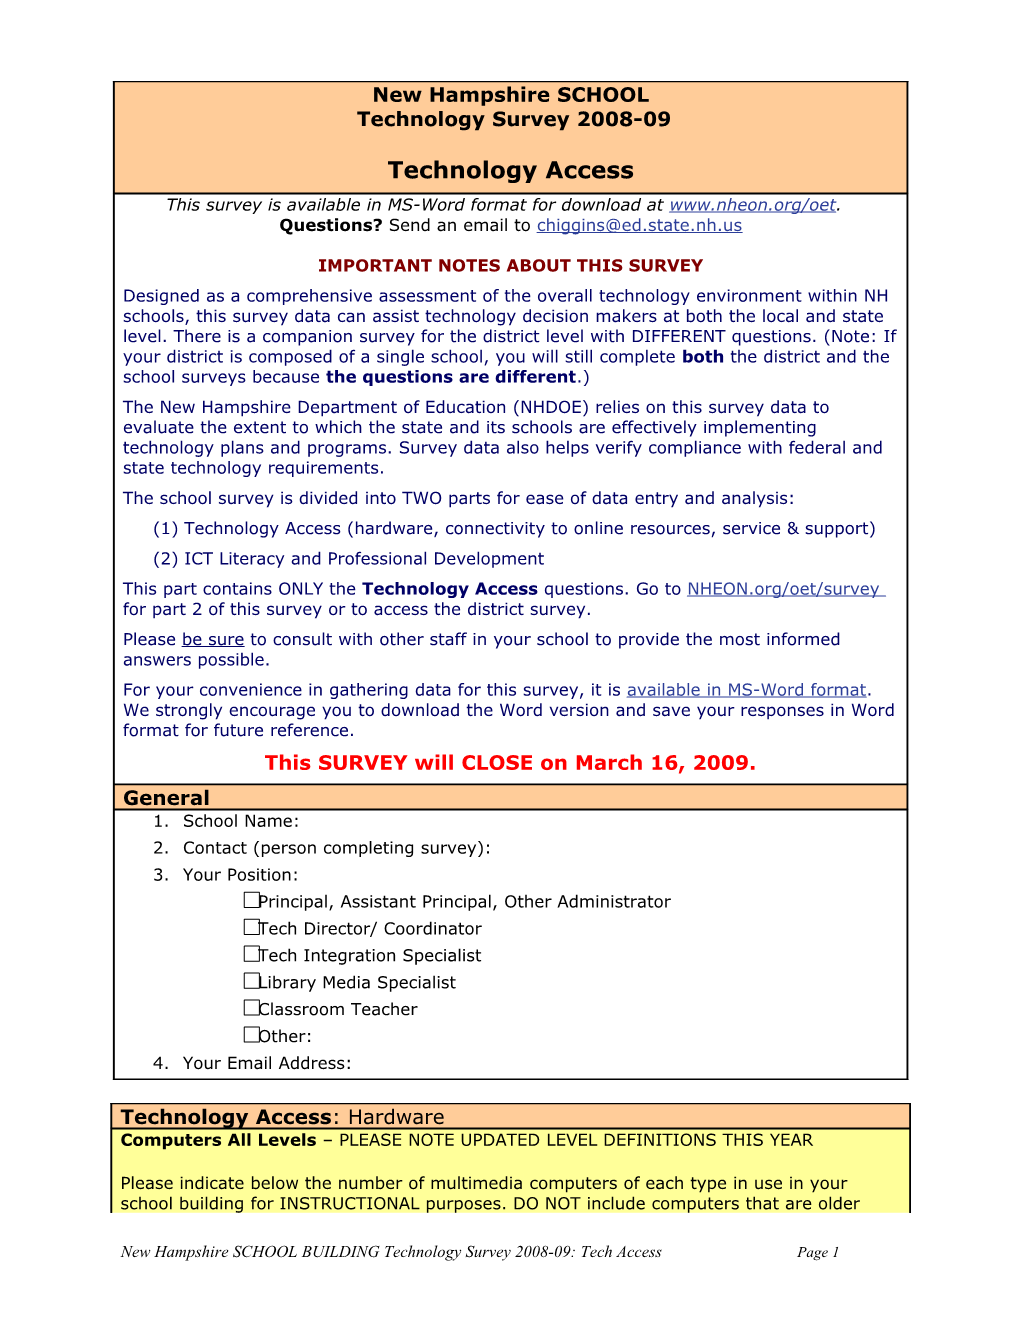 New Hampshireschoolbuildingtechnology Survey 2008-09: Tech Accesspage 1